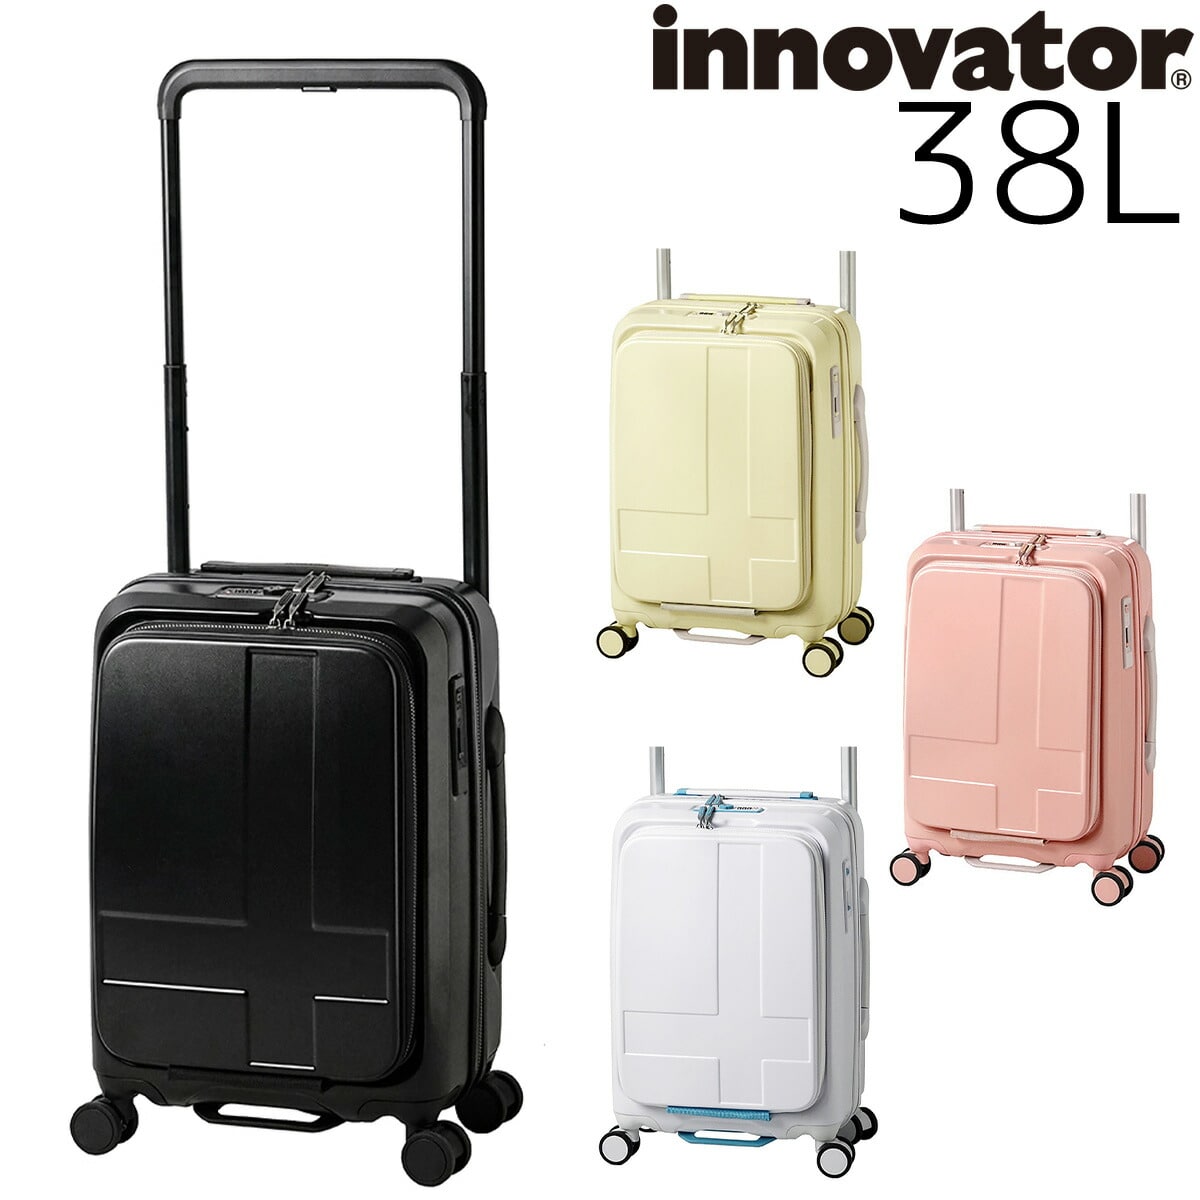 イノベーター innovator スーツケース 38L inv111 3.コーラルピンク -32